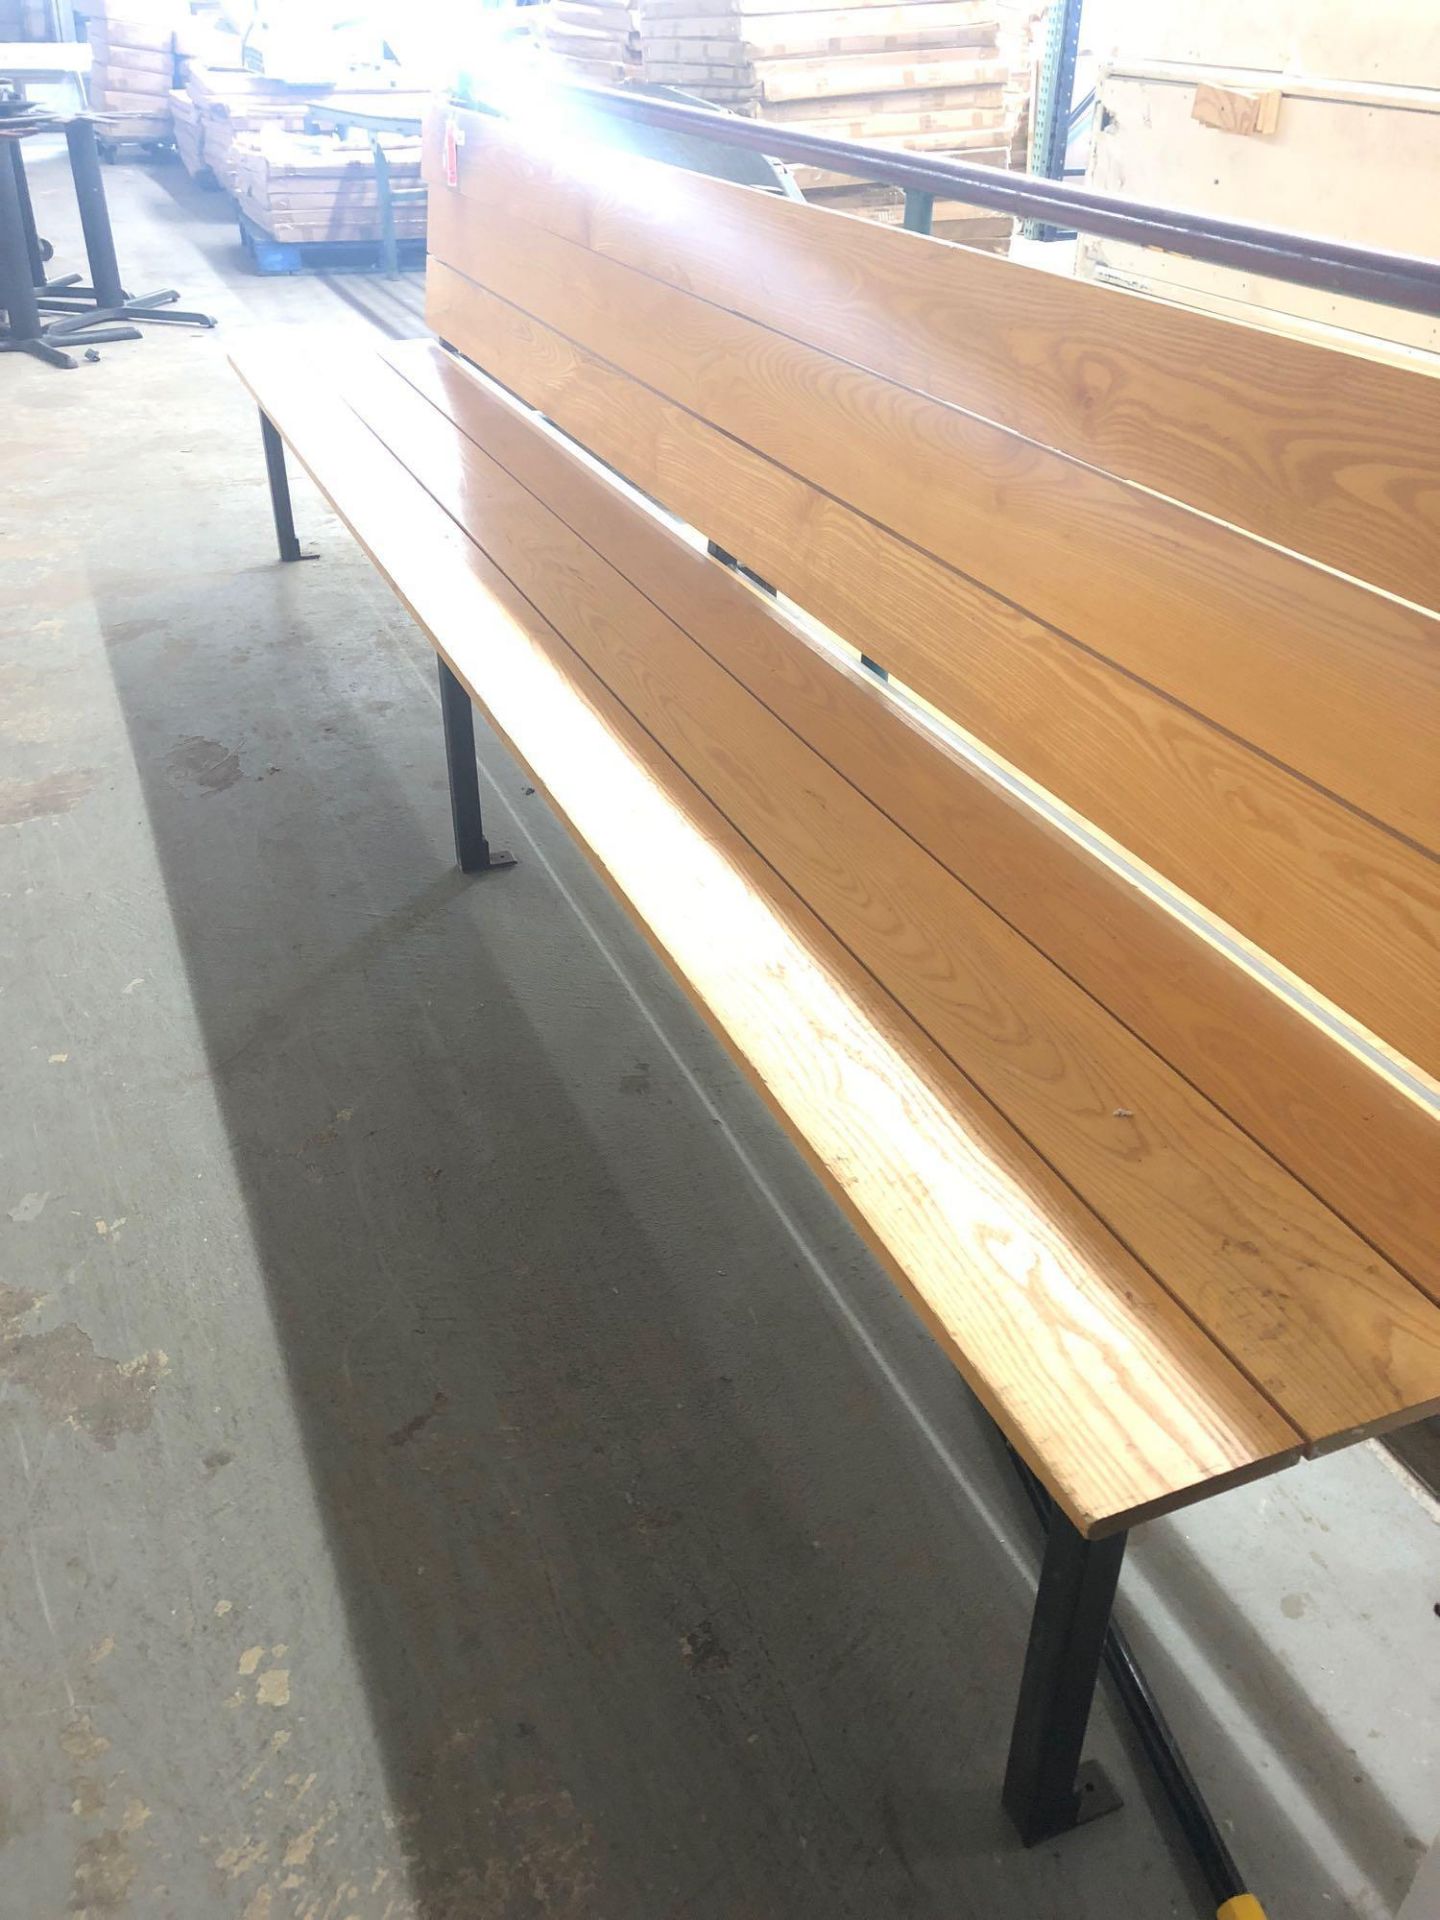 Wooden bench with metal frame - Bild 2 aus 2